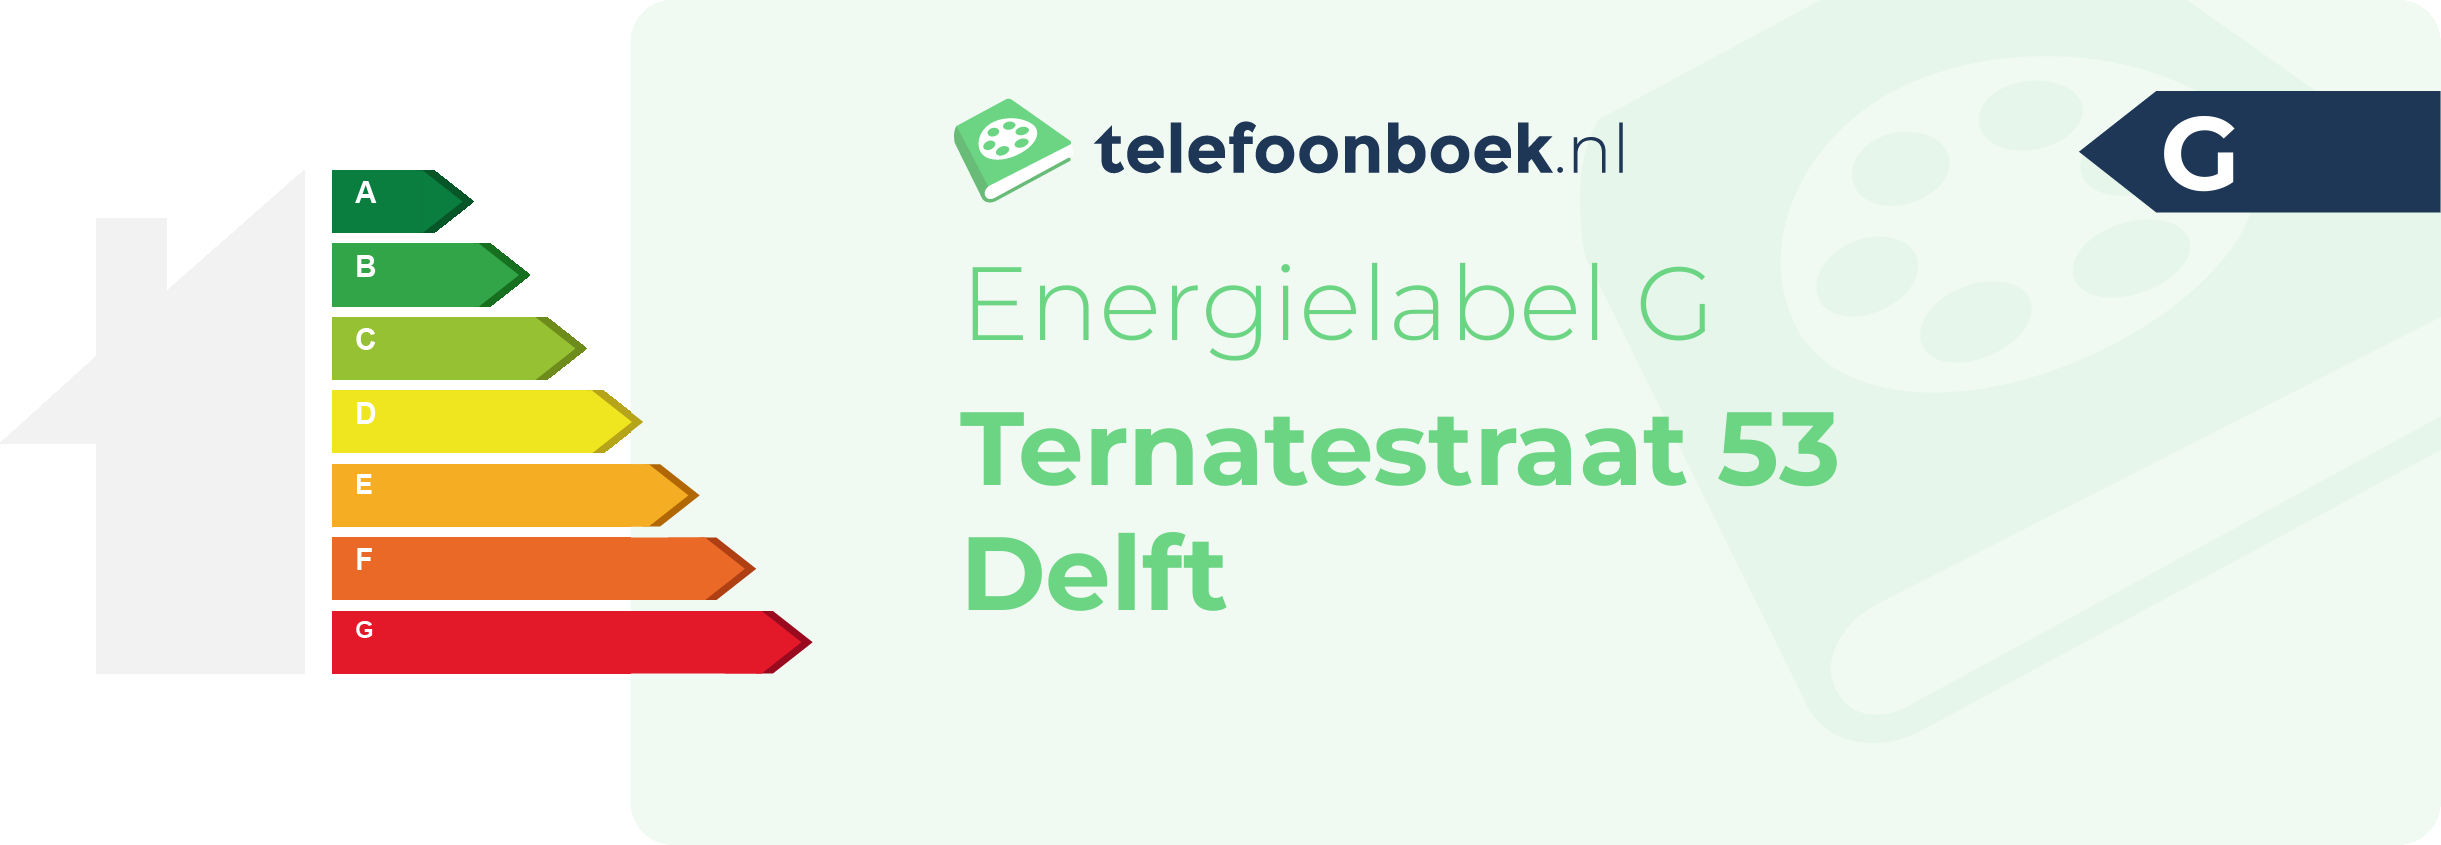 Energielabel Ternatestraat 53 Delft